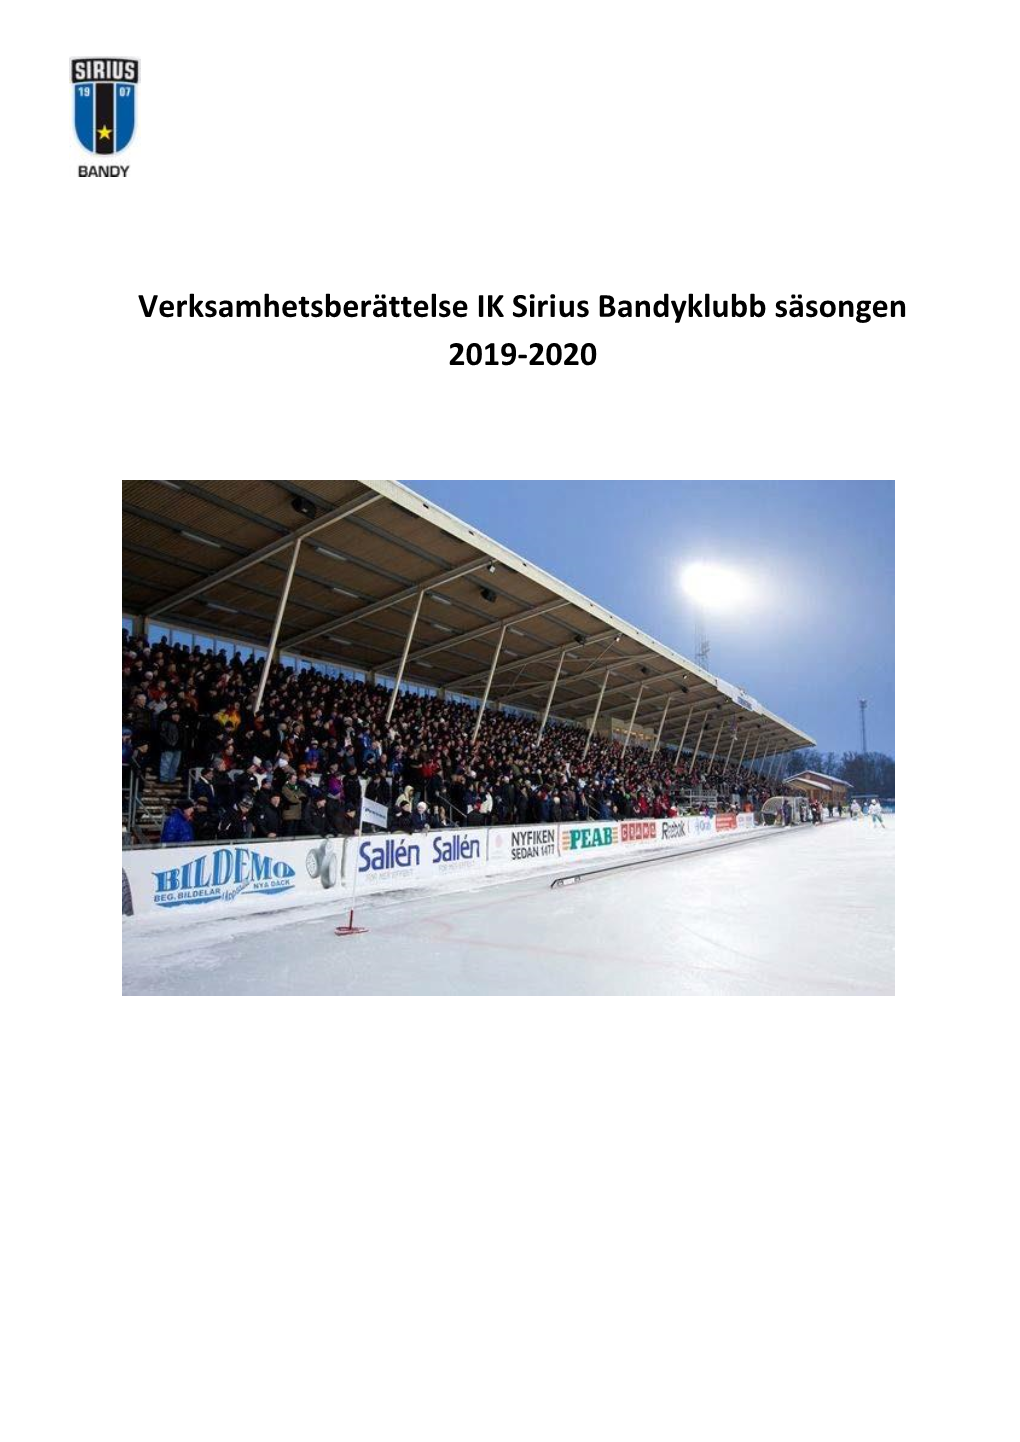 Verksamhetsberättelse IK Sirius Bandyklubb Säsongen 2019-2020